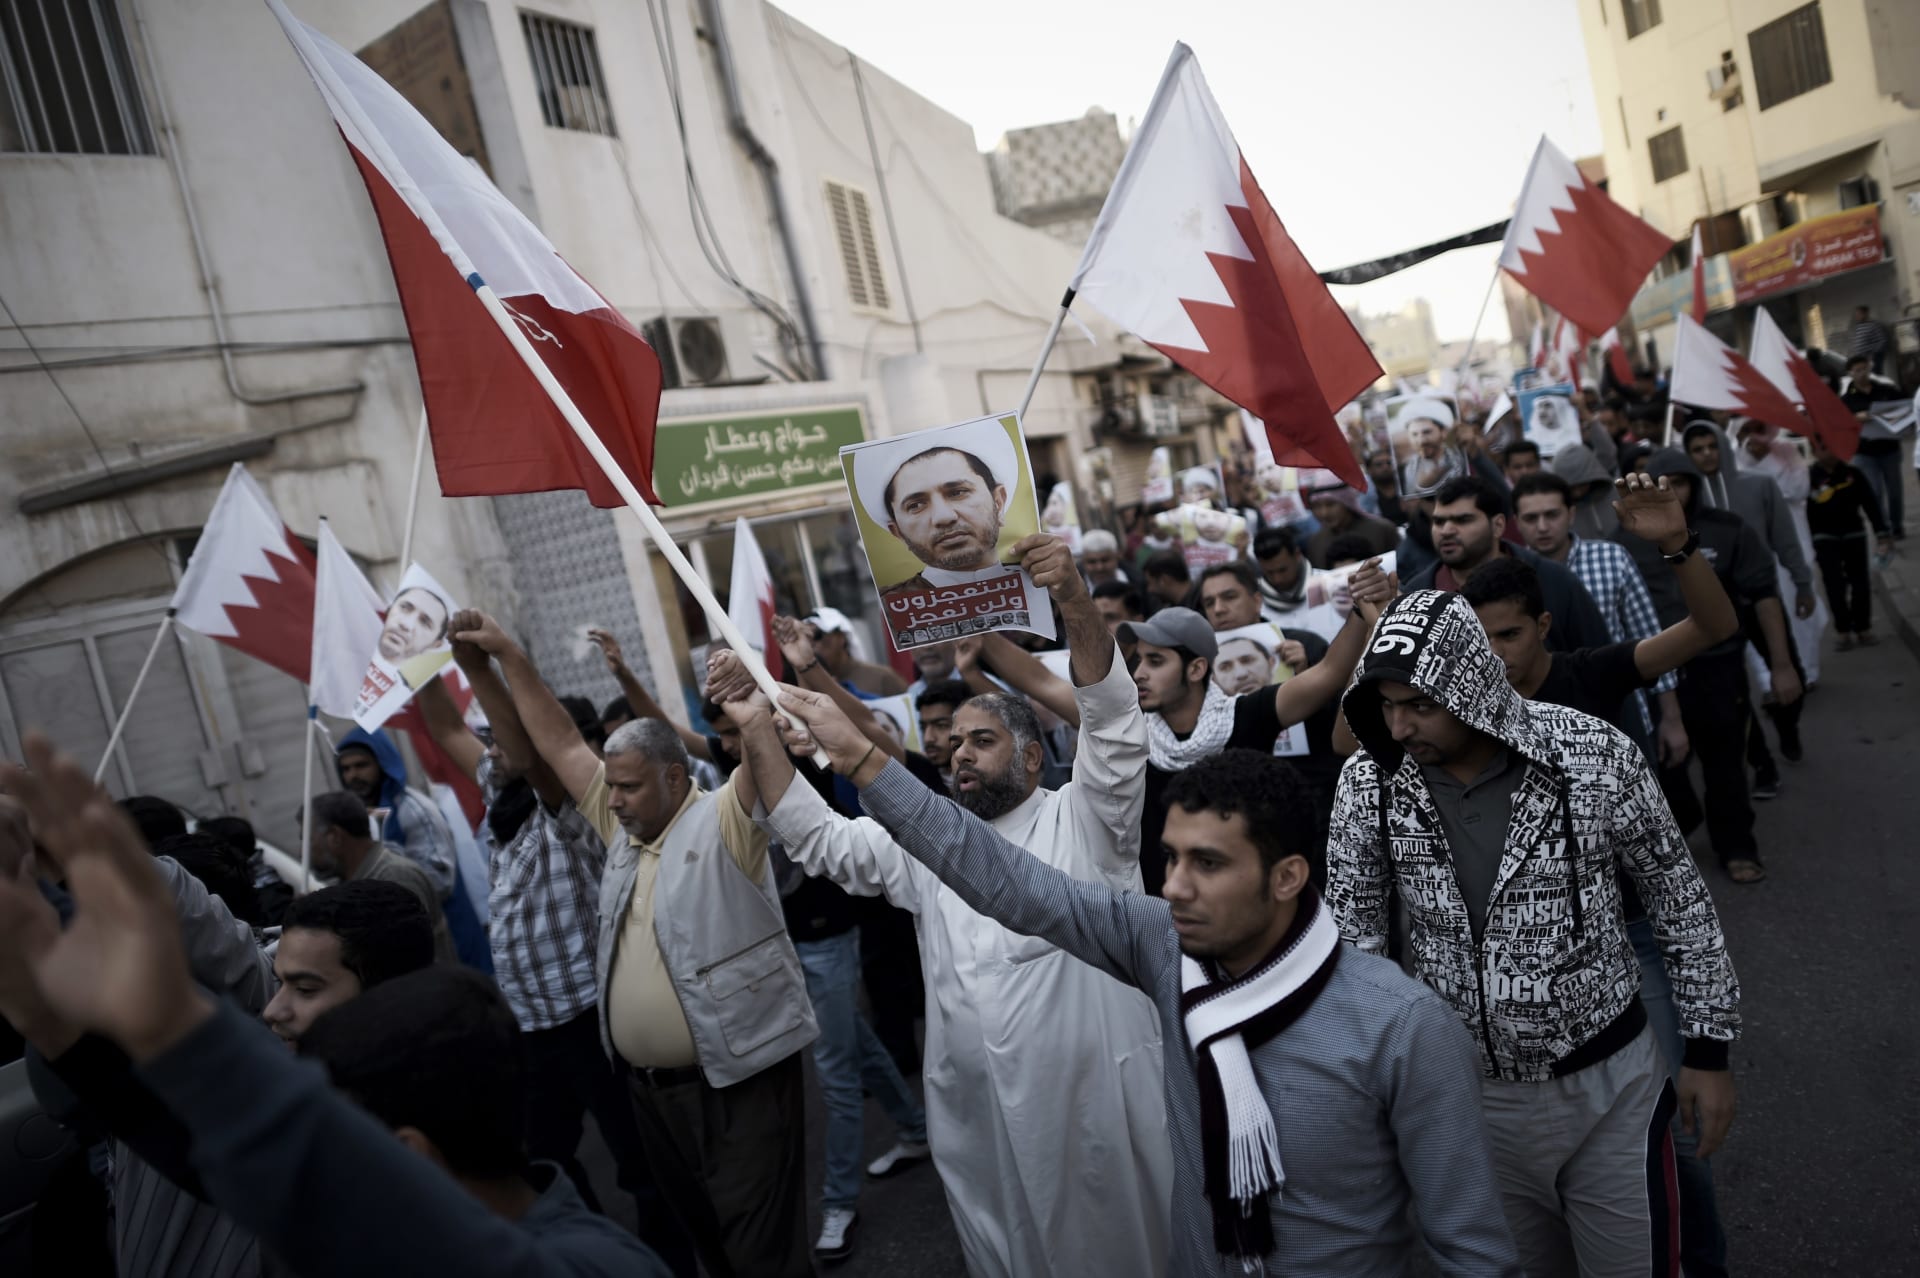 البحرين: صدور حكم قضائي بإيقاف جمعية "الوفاق" الشيعية والتحفظ على أموالها وإغلاق جميع مقارها